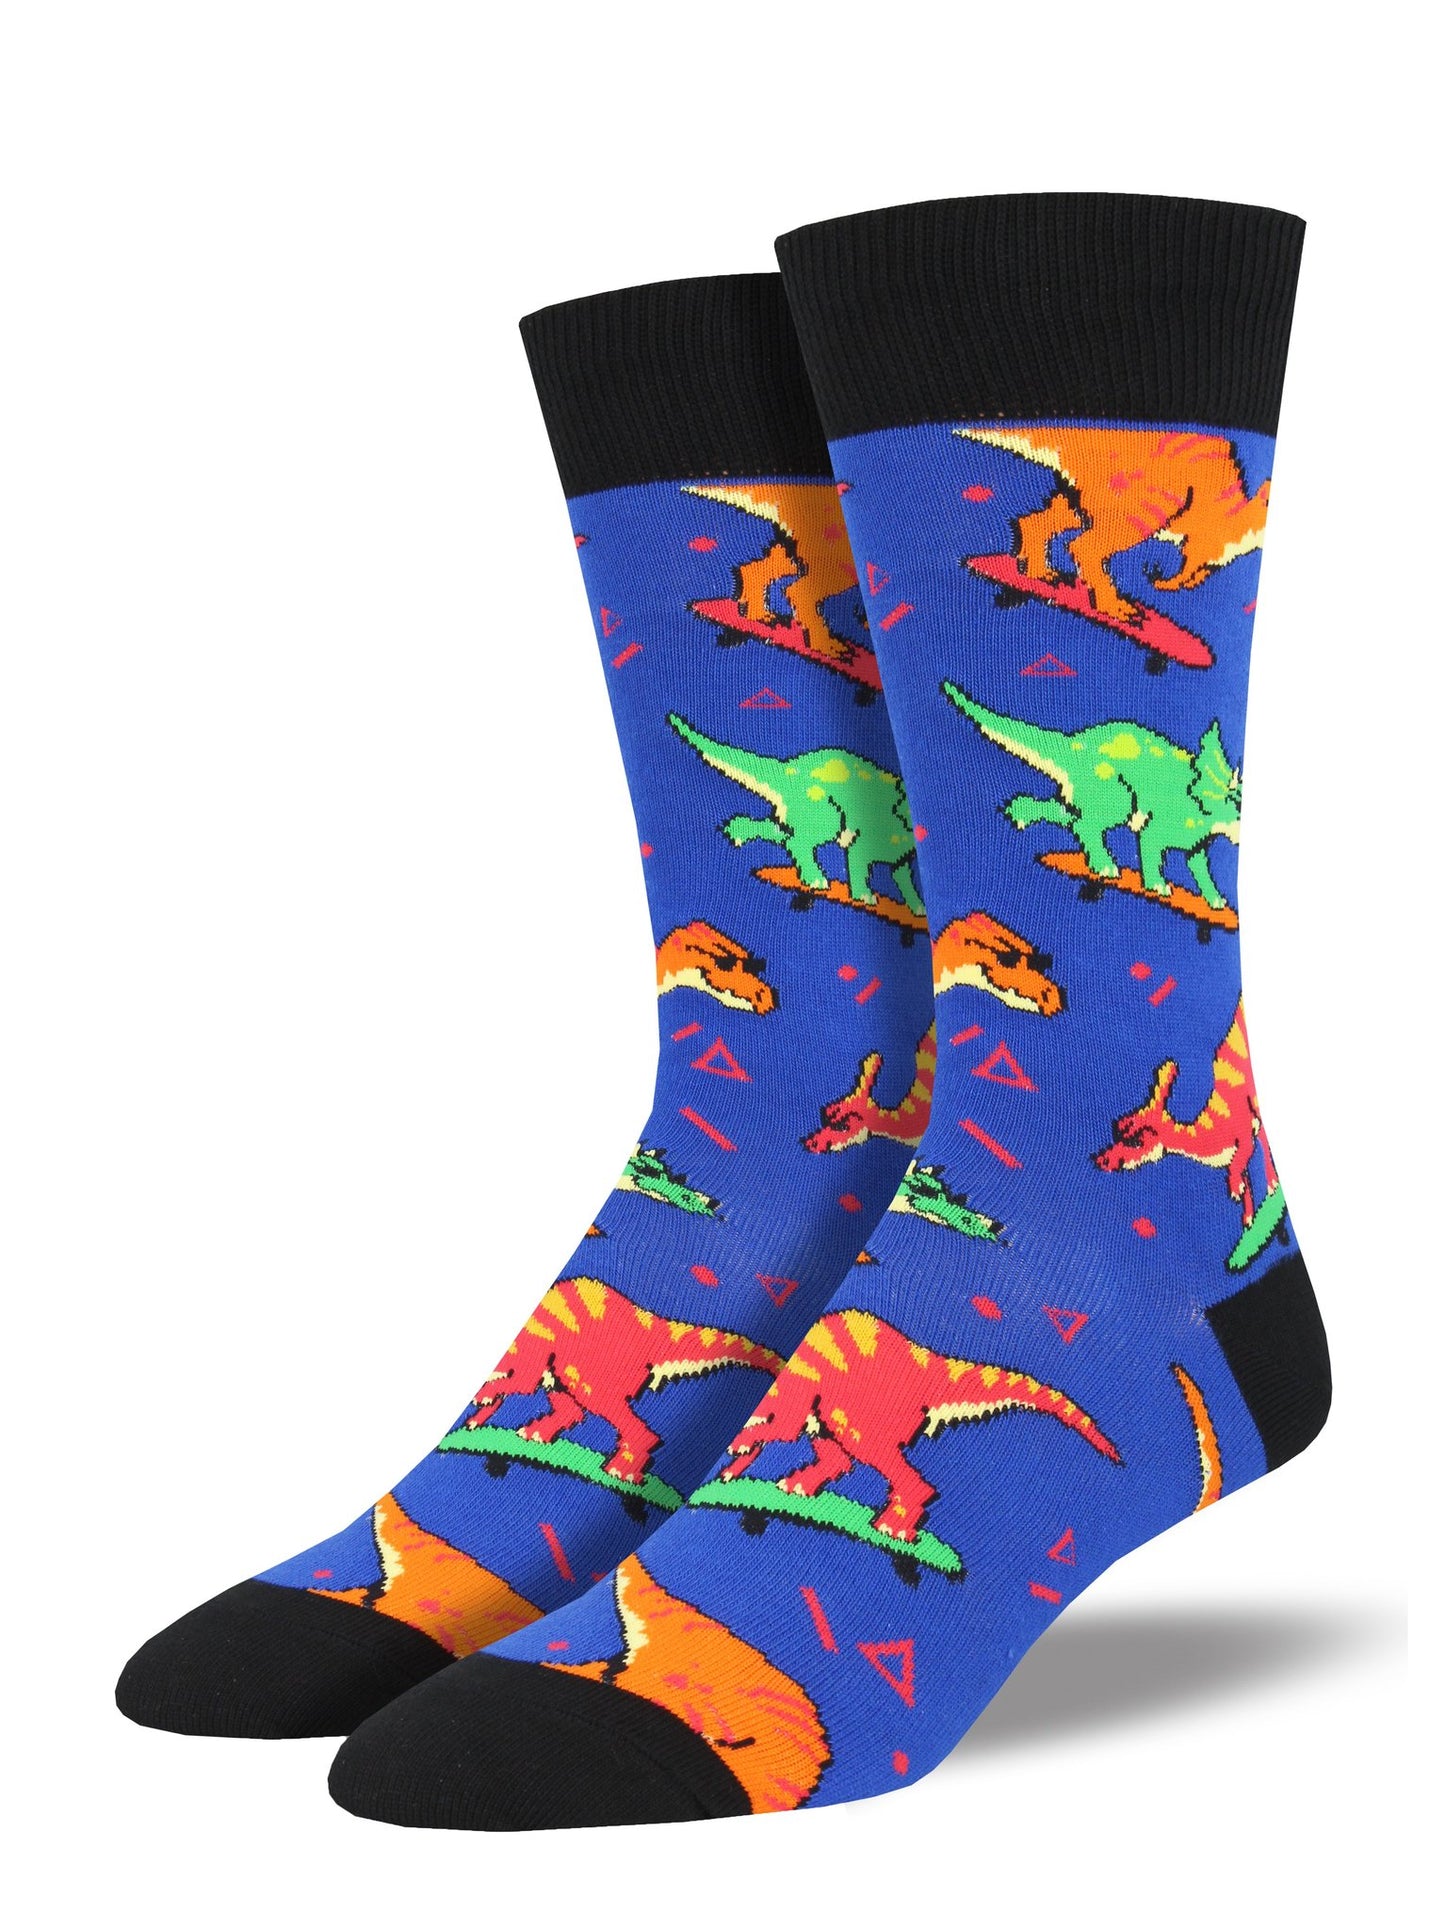 Skate Or Dinosaur Men's Crew Socks Blue